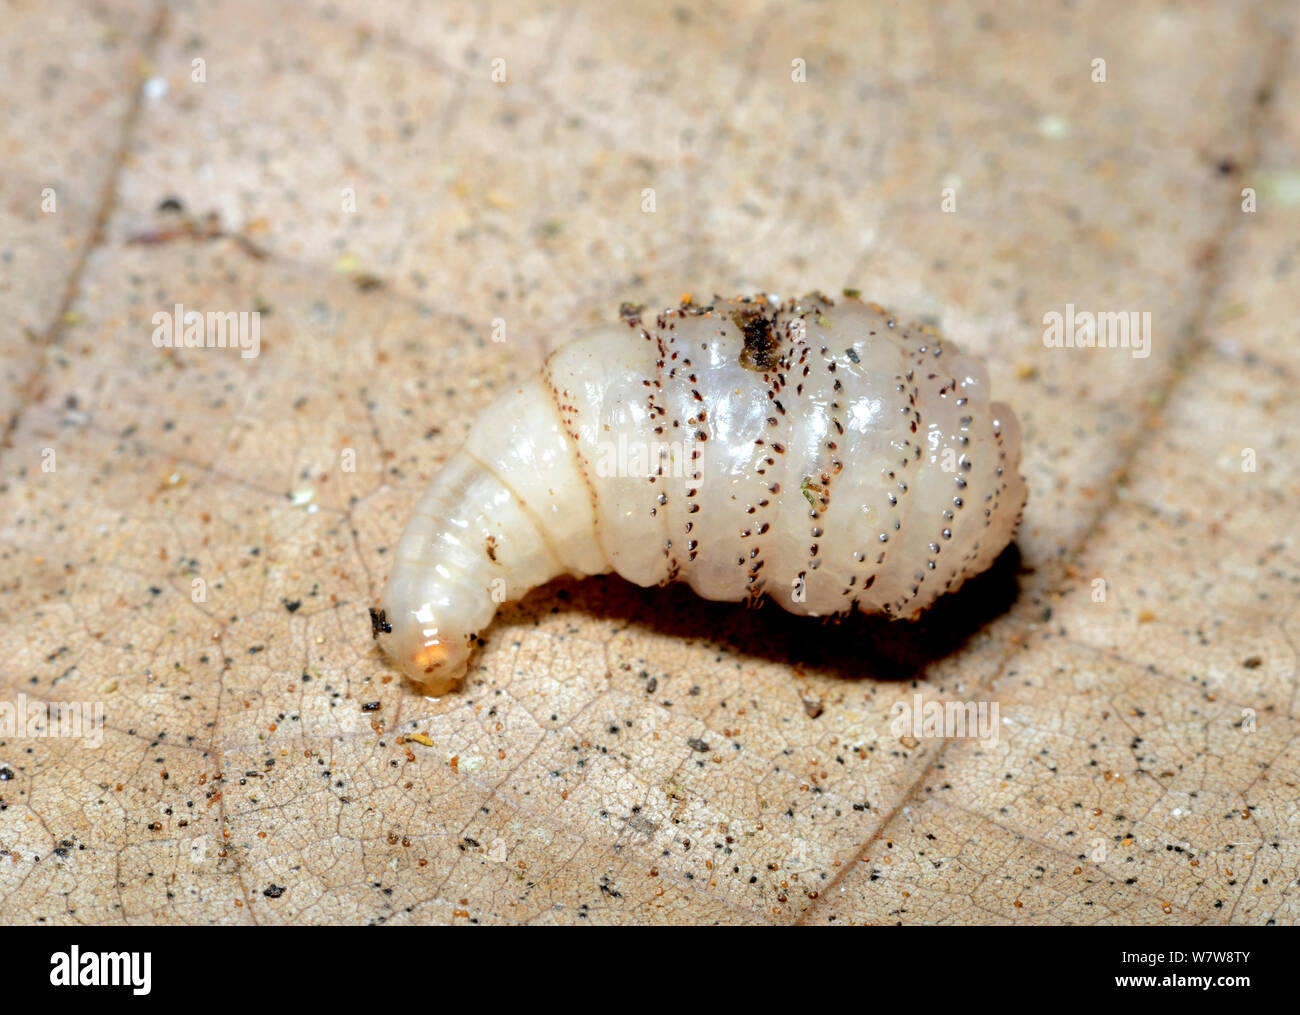 https://c8.alamy.com/comp/W7W8TY/human-botfly-dermatobia-hominis-larvae-on-leaf-french-guiana-W7W8TY.jpg